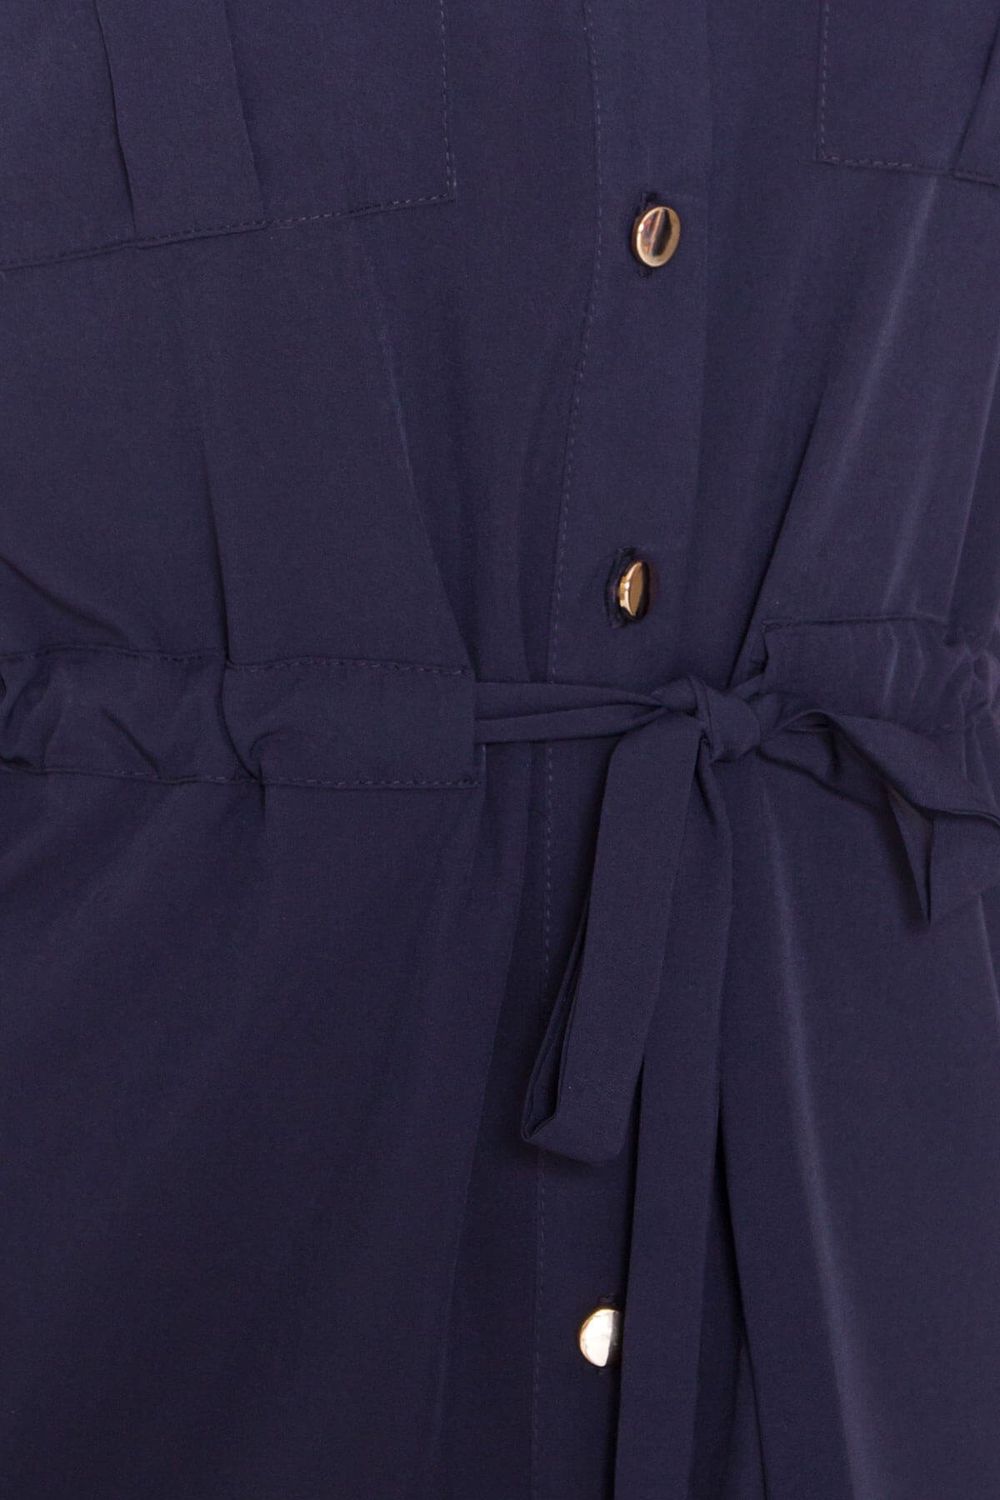 Літнє плаття-сорочка з коротким рукавом темно-синє - фото